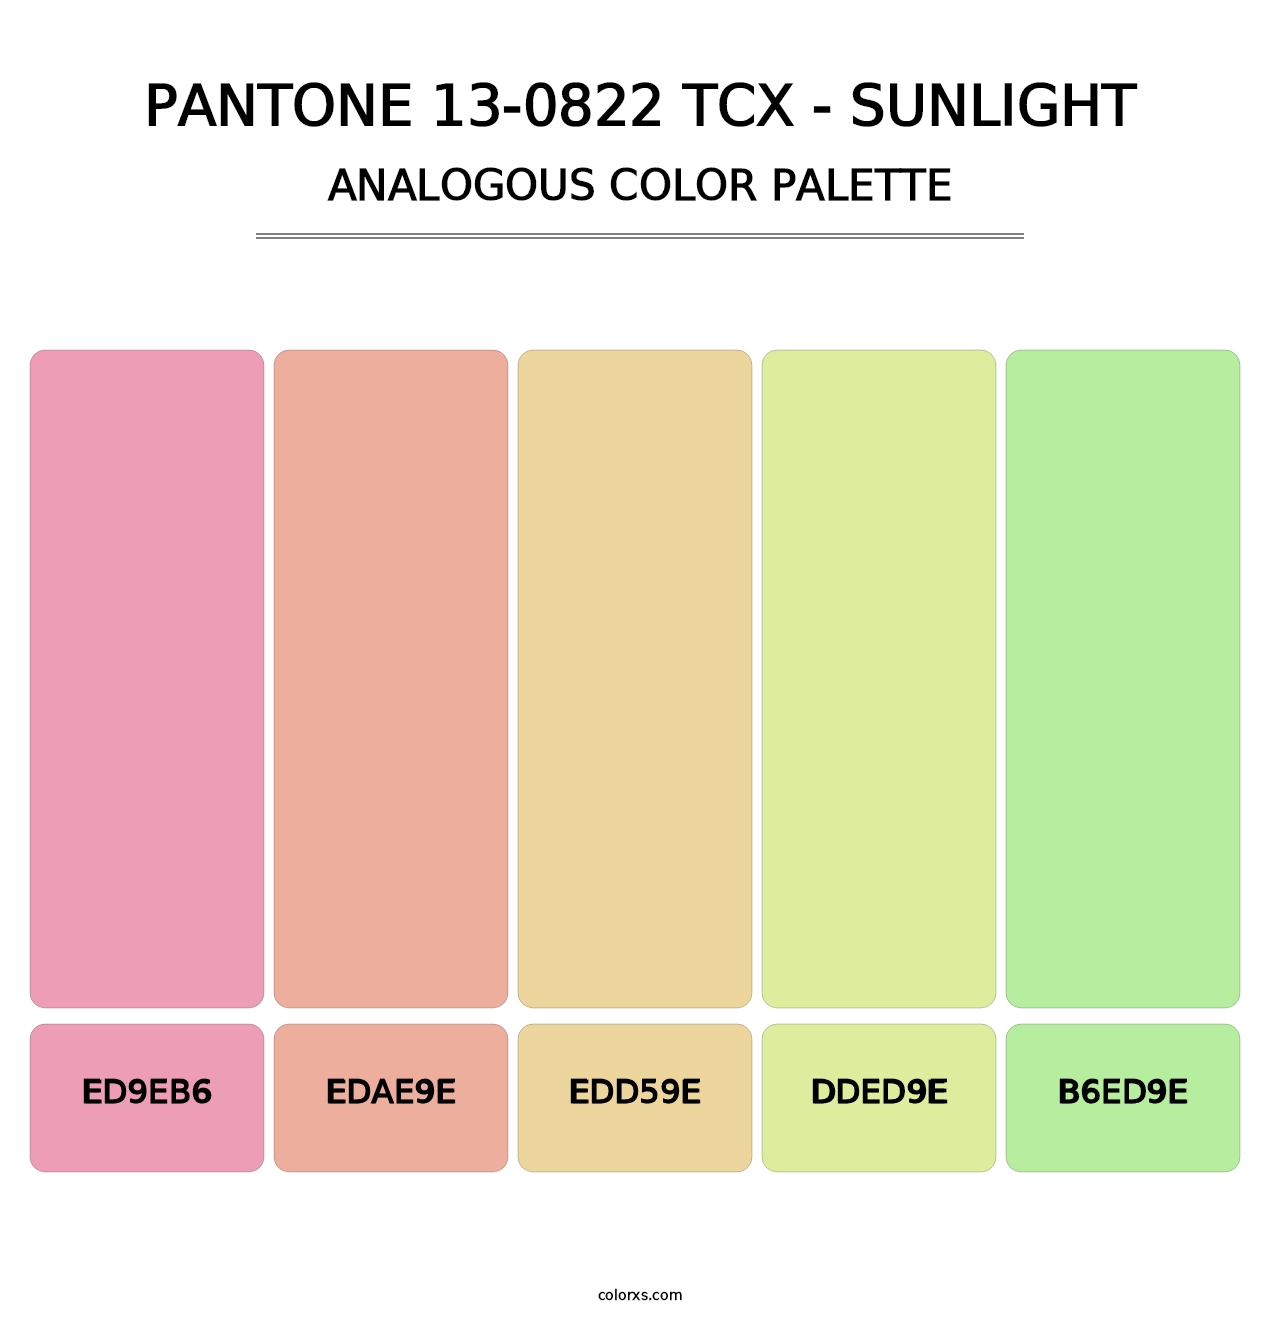 PANTONE 13-0822 TCX - Sunlight - Analogous Color Palette